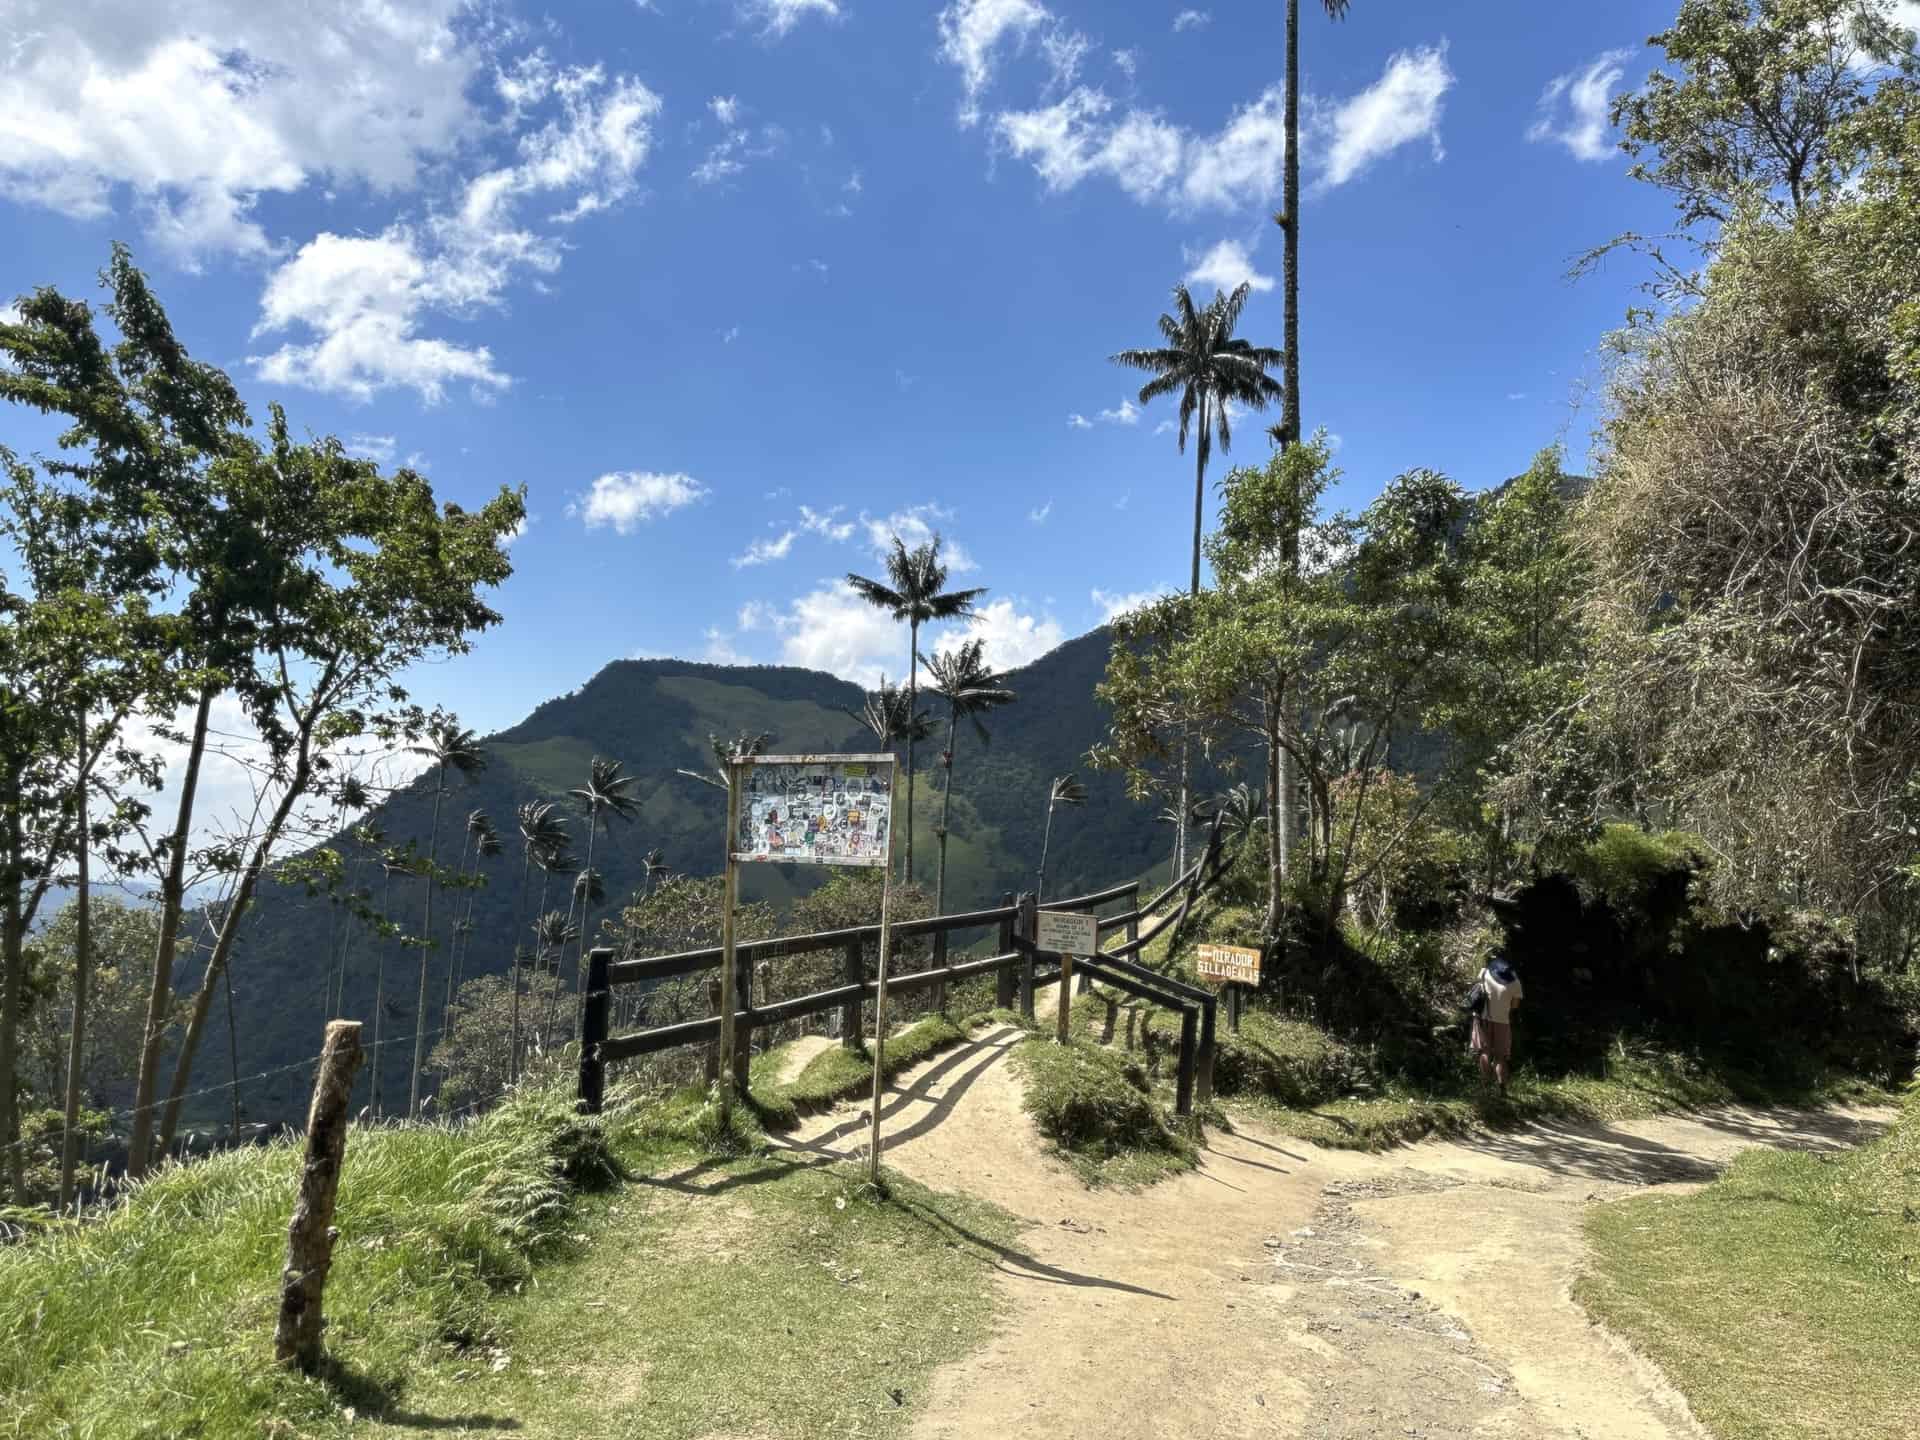 Entrance to Mirador #1 at Cocora Valley in Quindío, Colombia